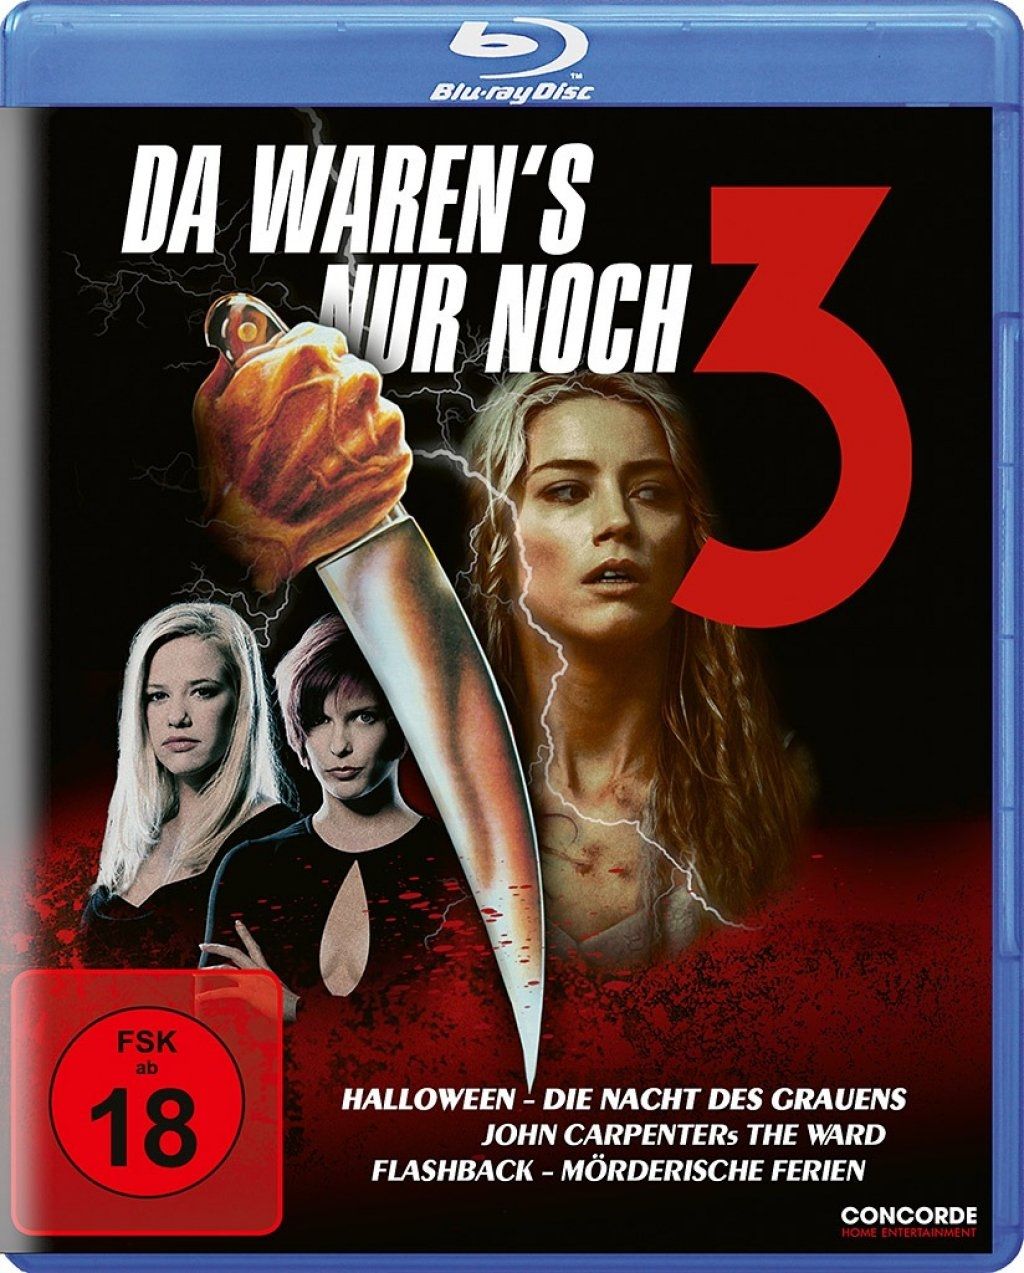 Halloween / The Ward / Flashback - Mörderische Ferien (Da waren's nur noch 3) (3 Discs) (BLURAY)